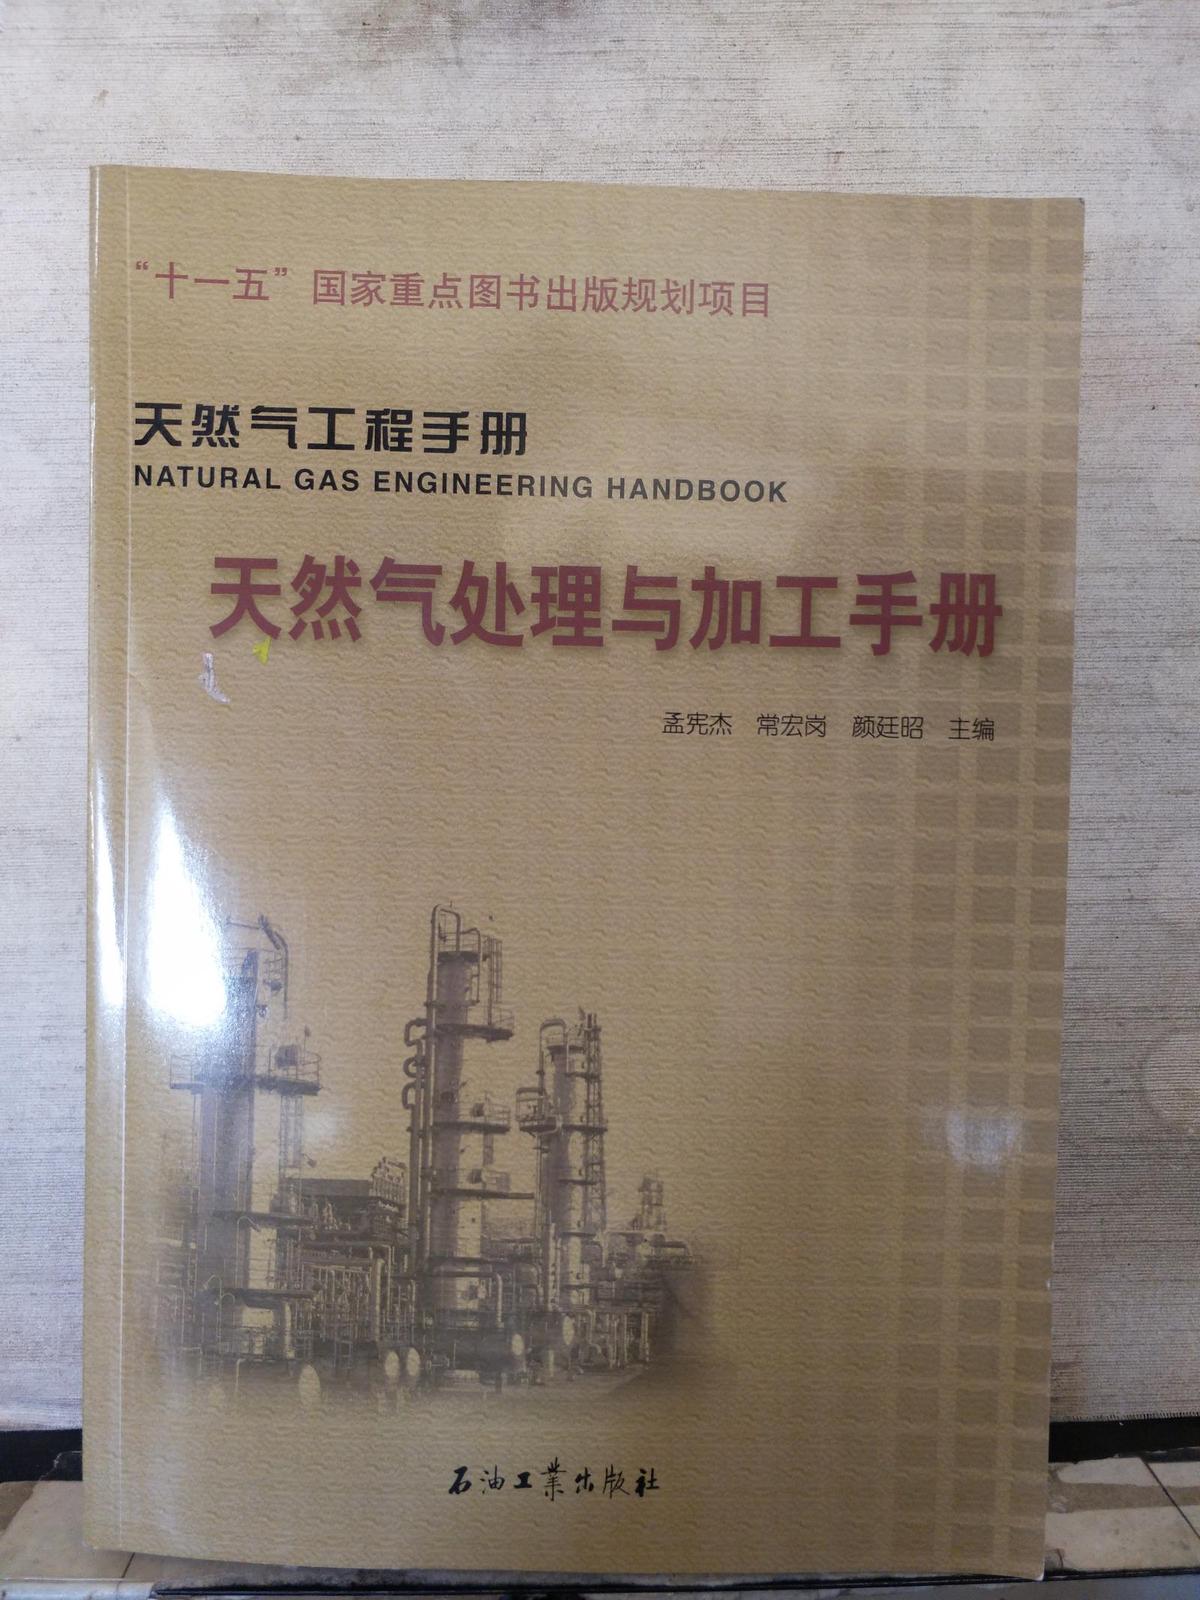 天然气处理与加工手册 天然气工程手册.